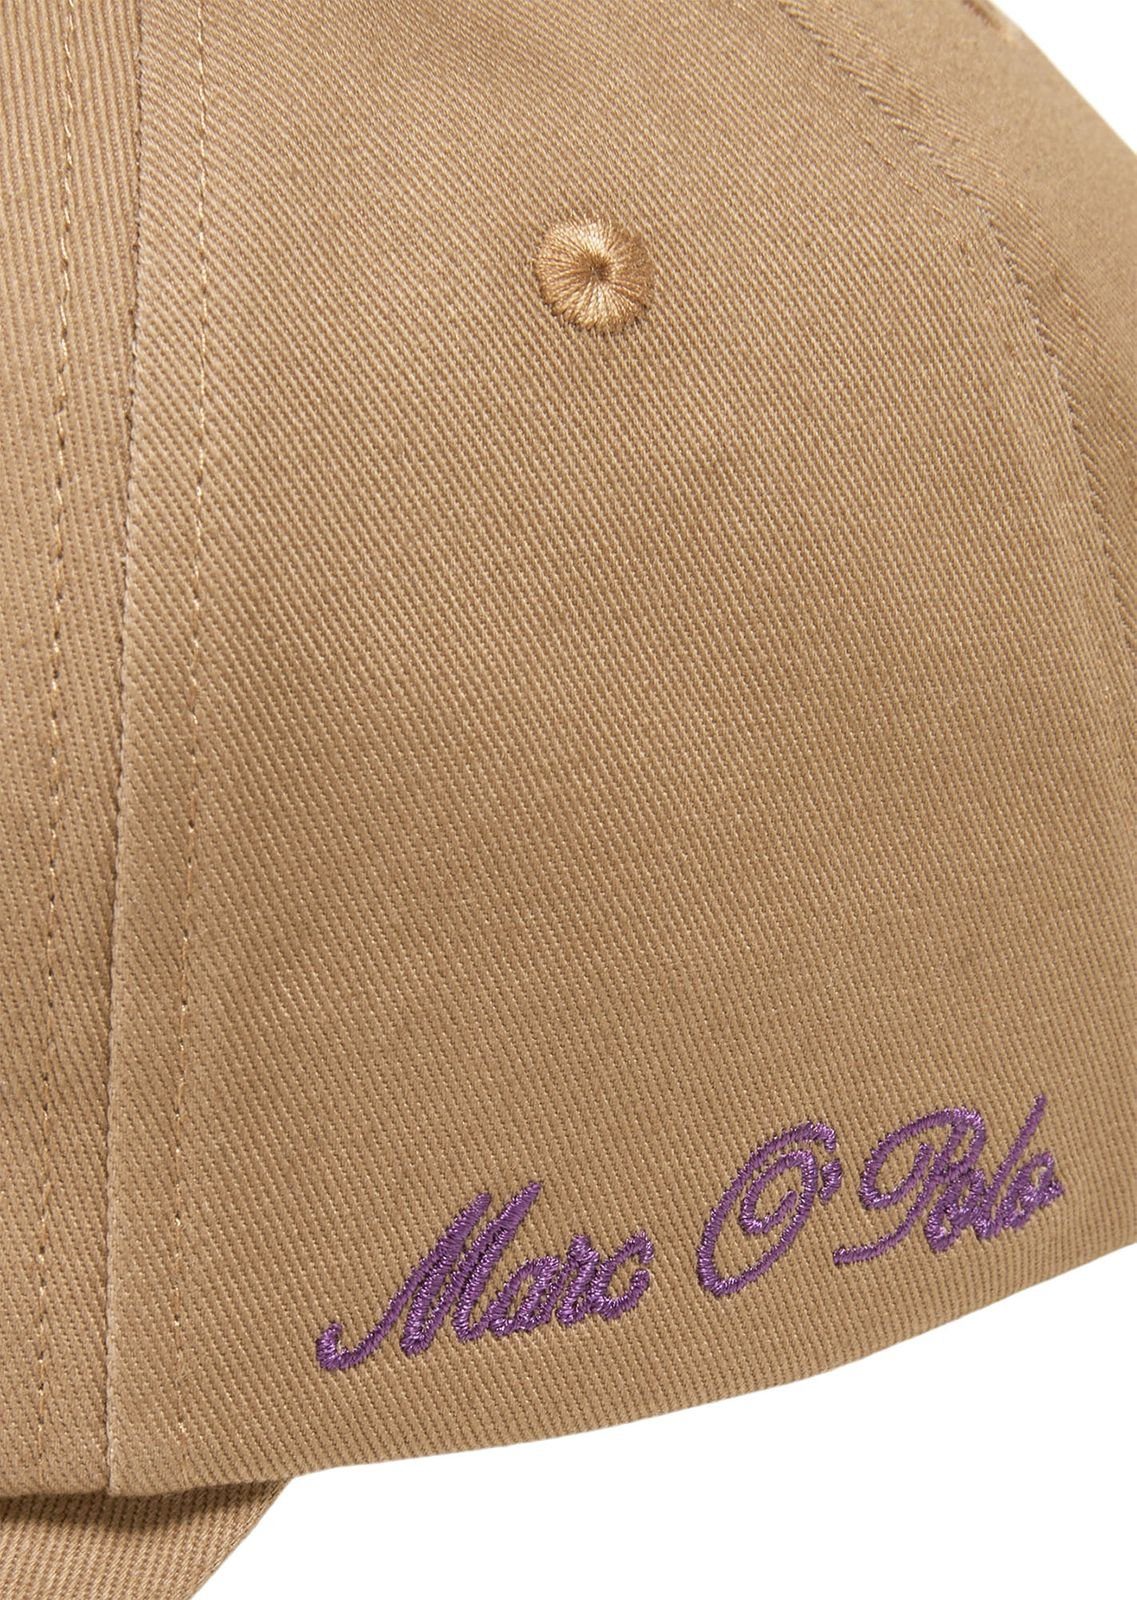 Marc O'Polo Baseball Cap Casabella Brown Embroidery